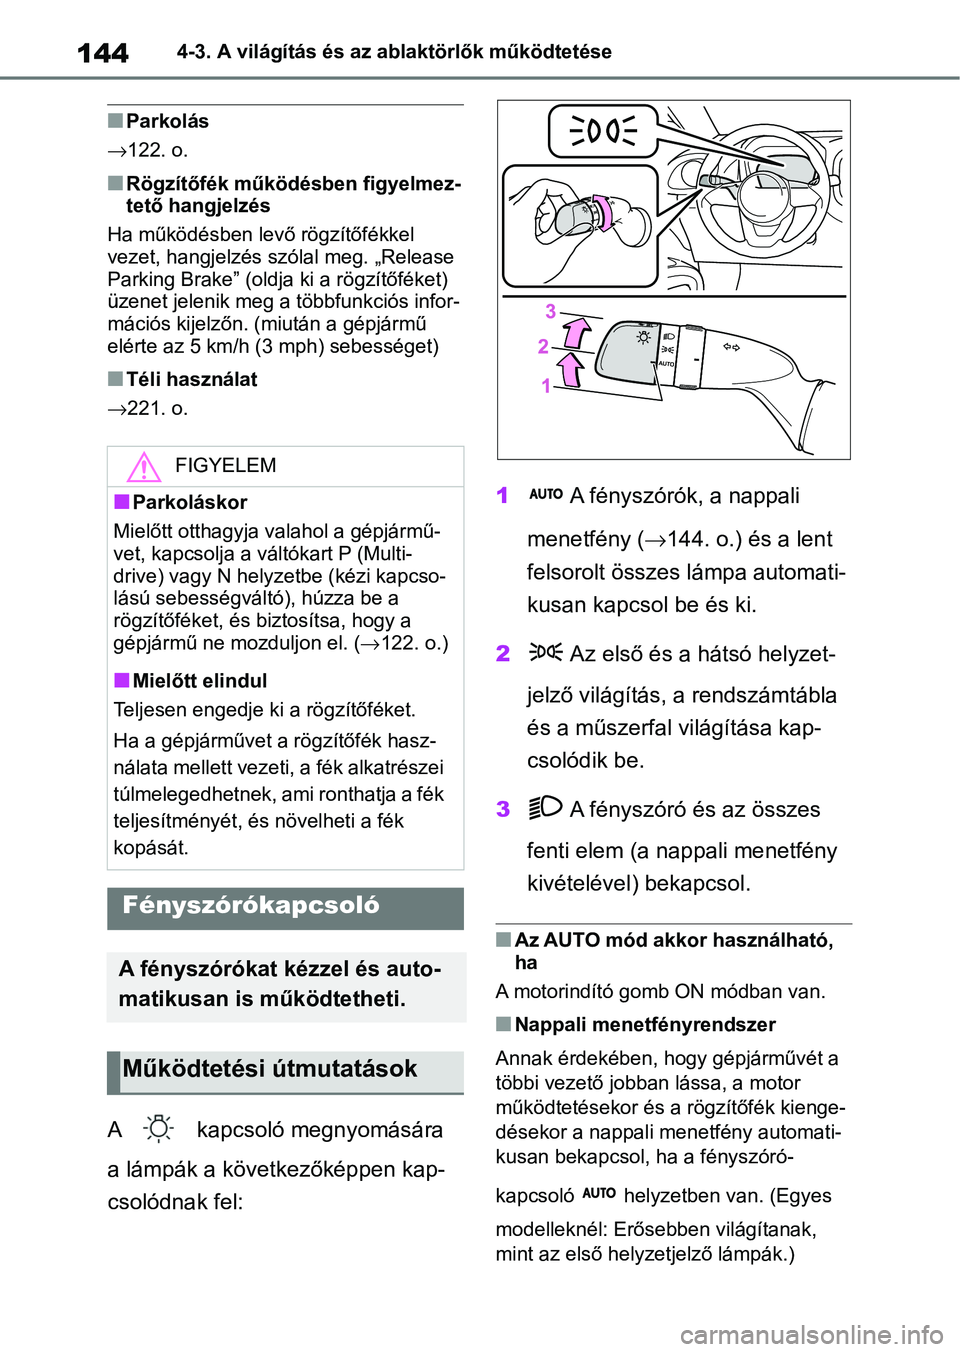 TOYOTA AYGO X 2022  Kezelési útmutató (in Hungarian) 1444-3. A világítás és az ablaktörlők működtetése
nParkolás
122. o.
nRögzítőfék működésben figyelmez-
tető hangjelzés
Ha működésben levő rögzítőfékkel 
vezet, hangjelzés